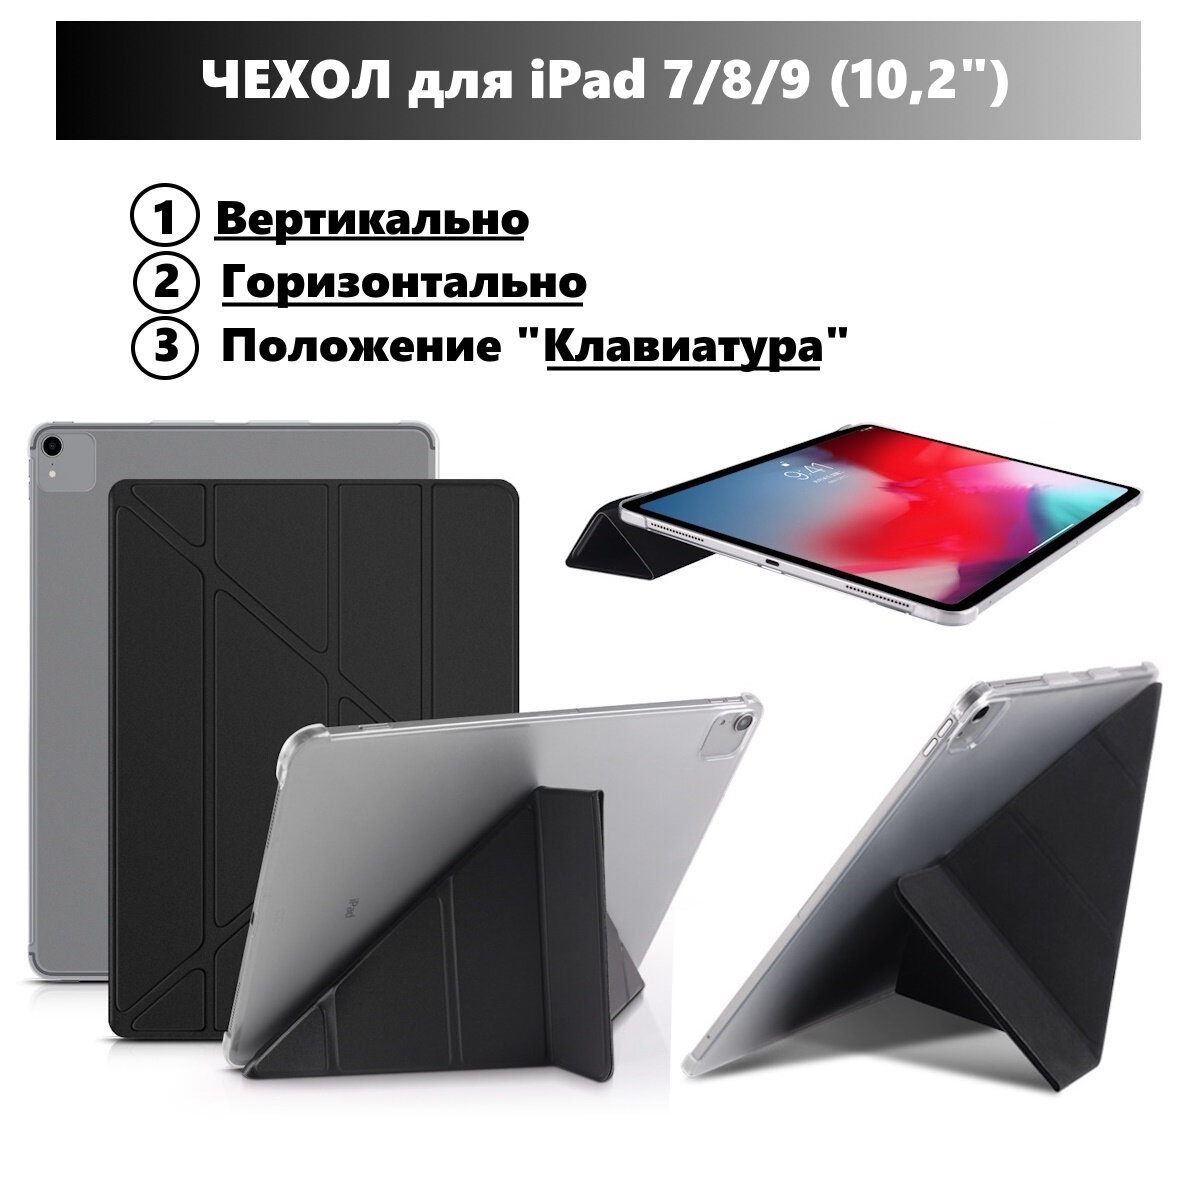 Чехол для iPad 7 (2019г) ipad 8 (2020г) ipad 9 (2021г) 10.2" горизонтальный и вертикальный умный чехол для iPad с местом для стилуса Тёмно-синий